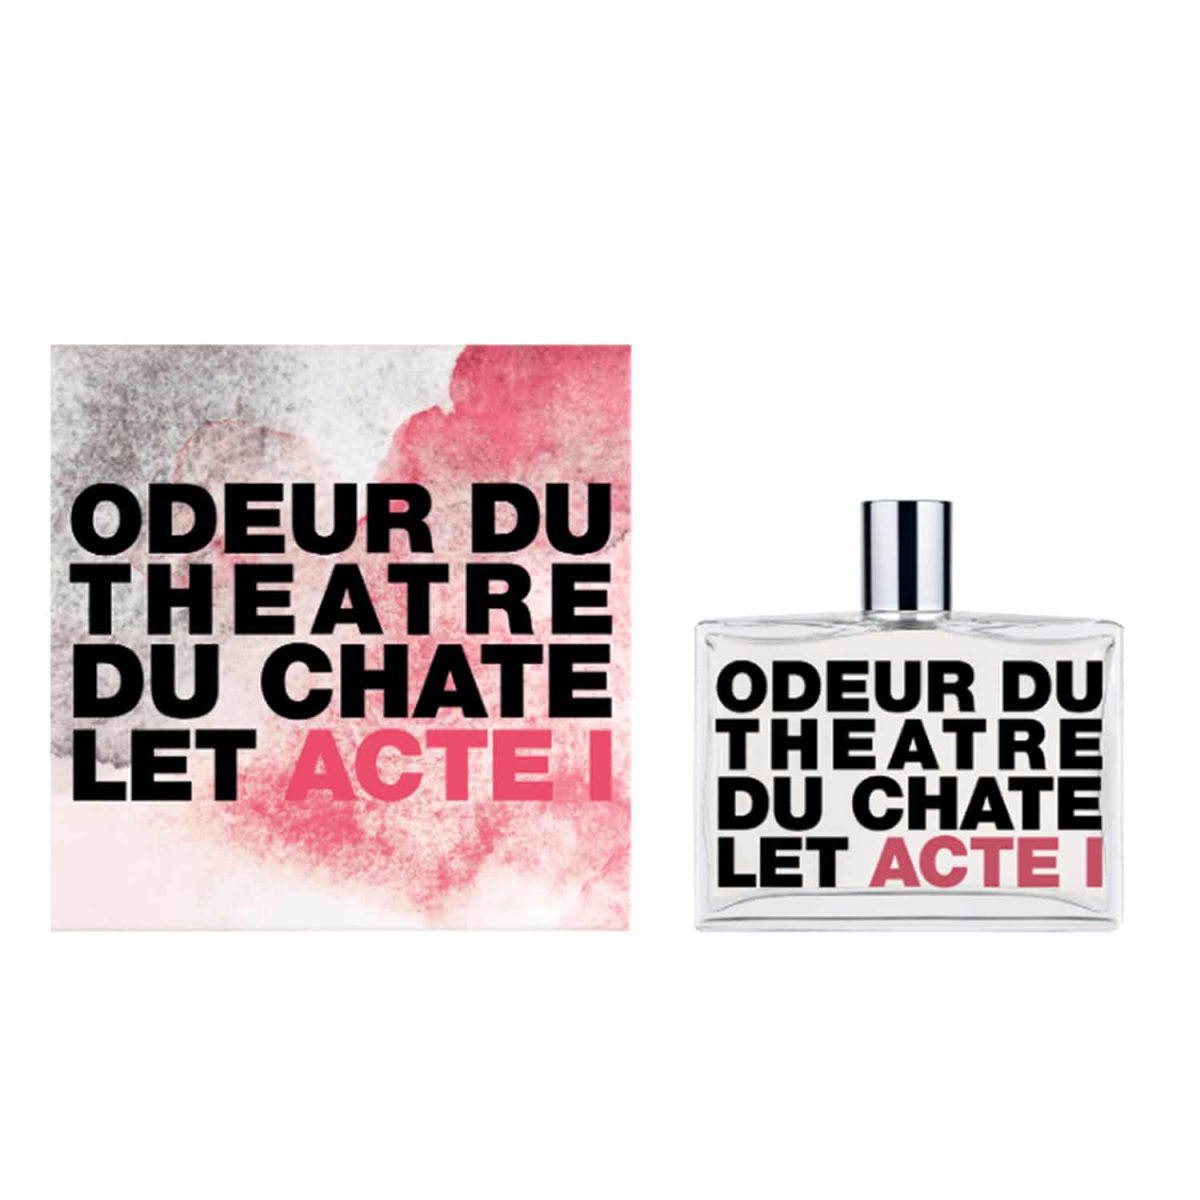 Photo du produit Odeur du Théâtre du Chatelet - Acte 1 de la boutique Gago